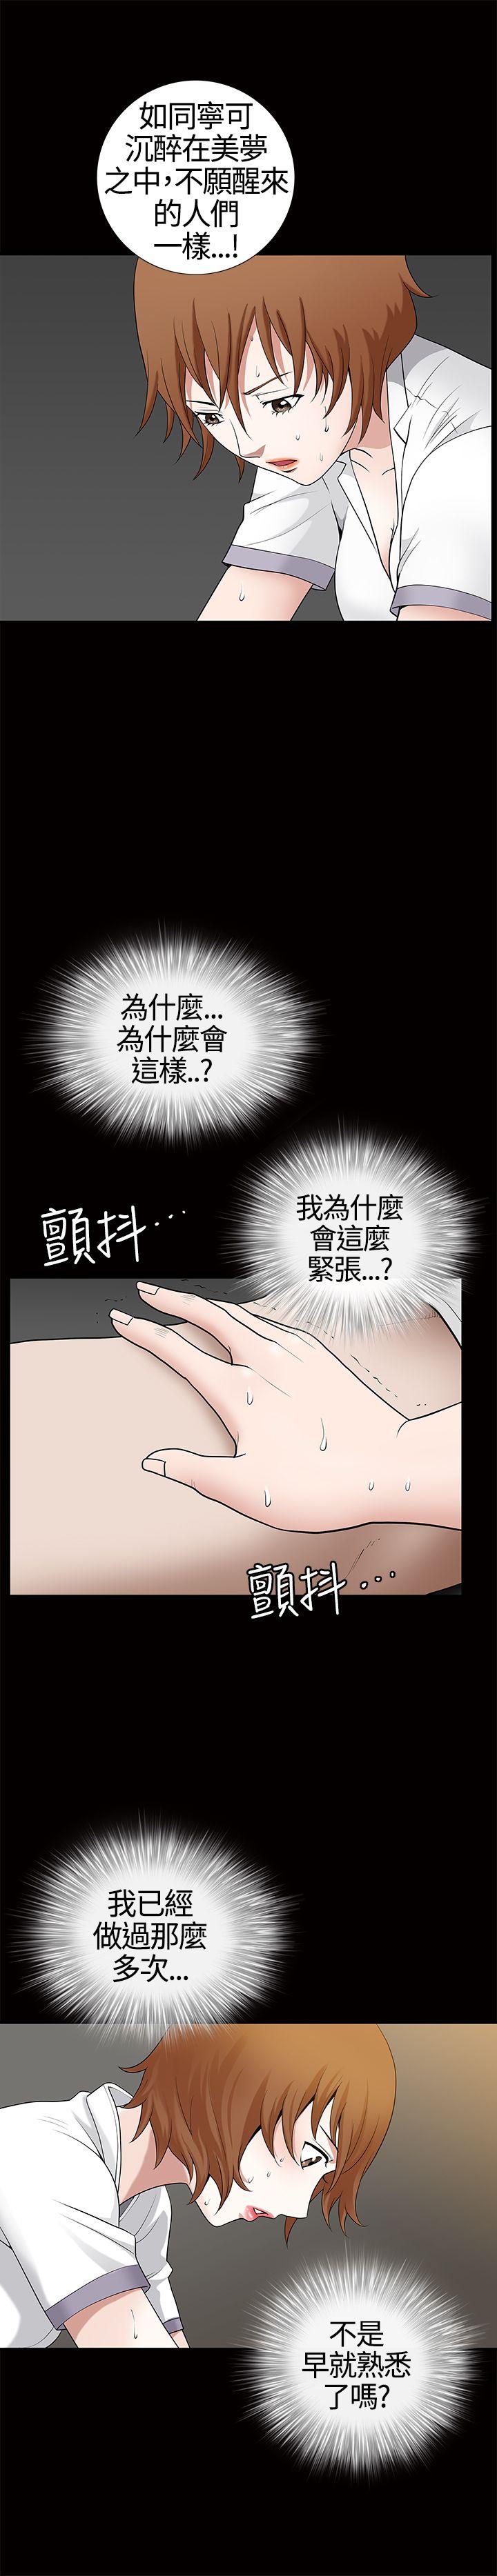 韩国污漫画 人妻性解放3:粗糙的手 第13话 26